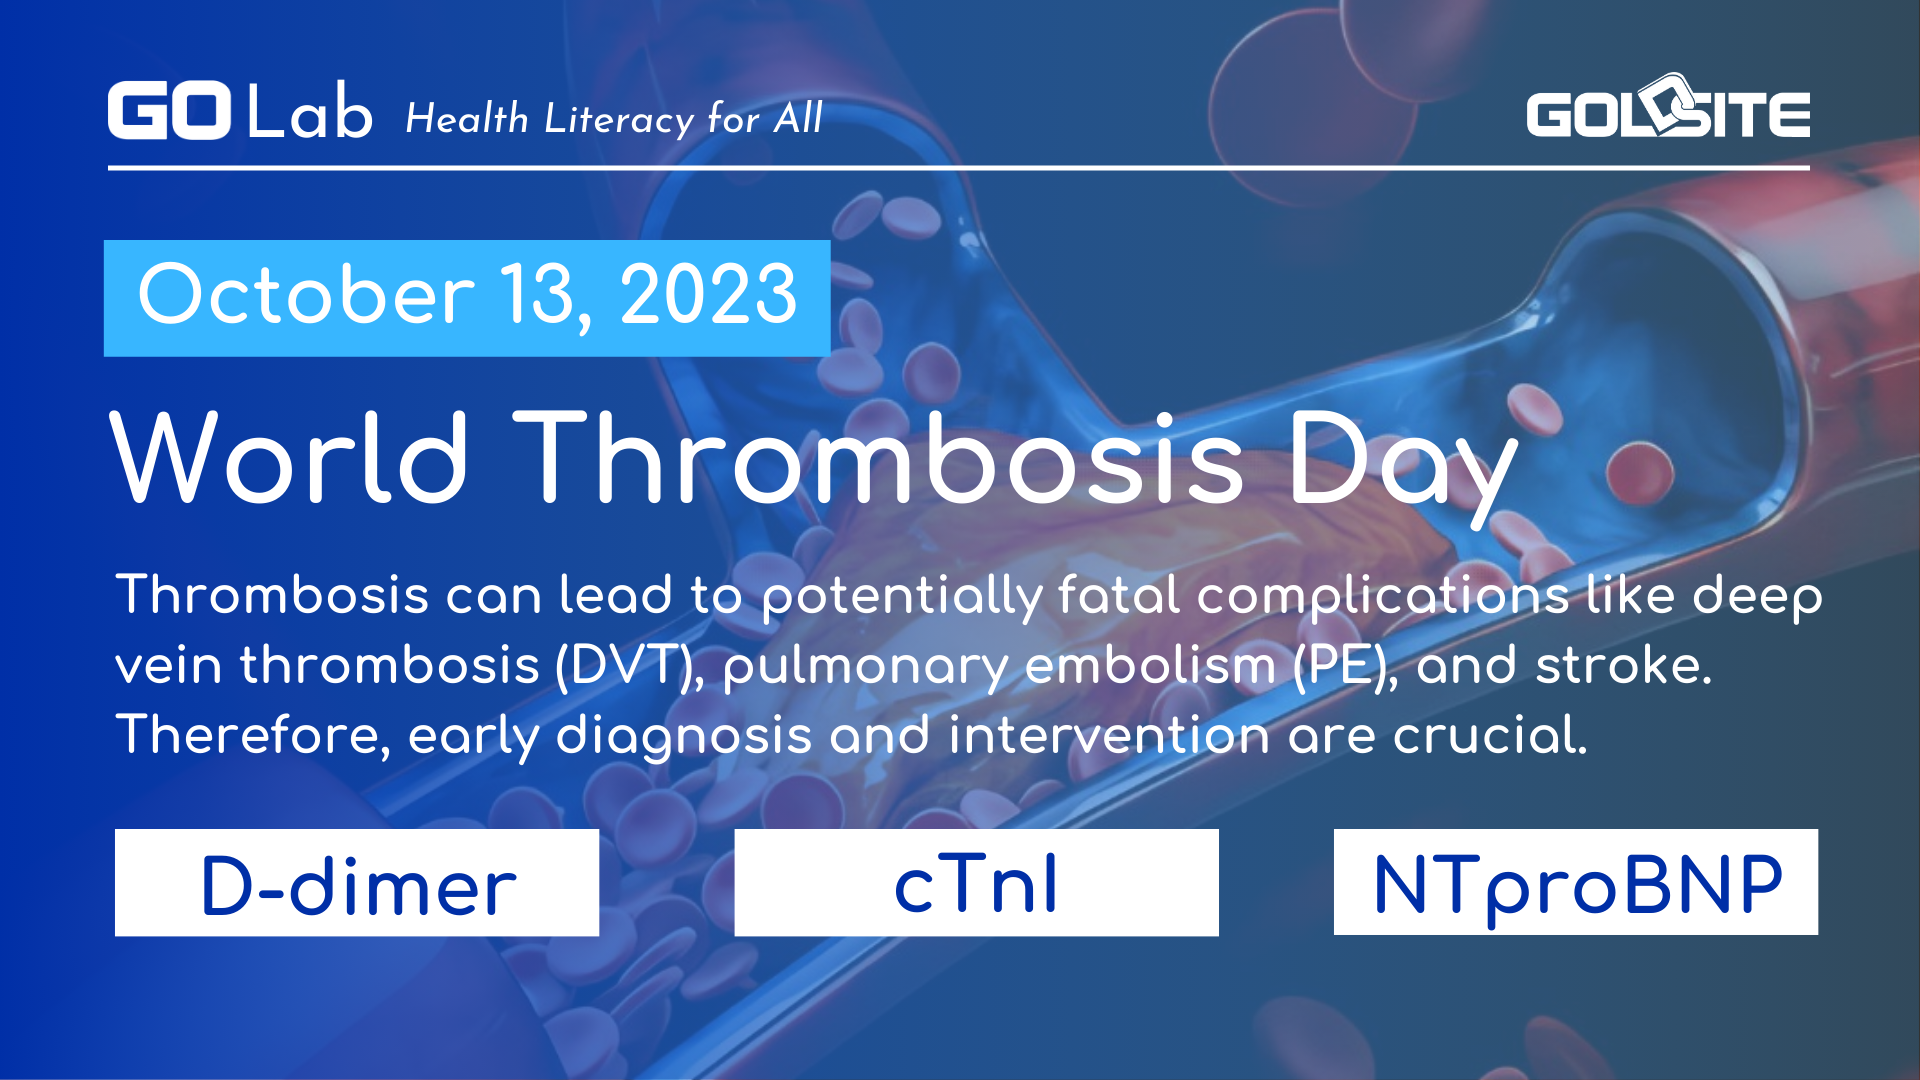 Marcadores de laboratorio en el diagnóstico de trombosis-golab en el Día Mundial de la Trombosis